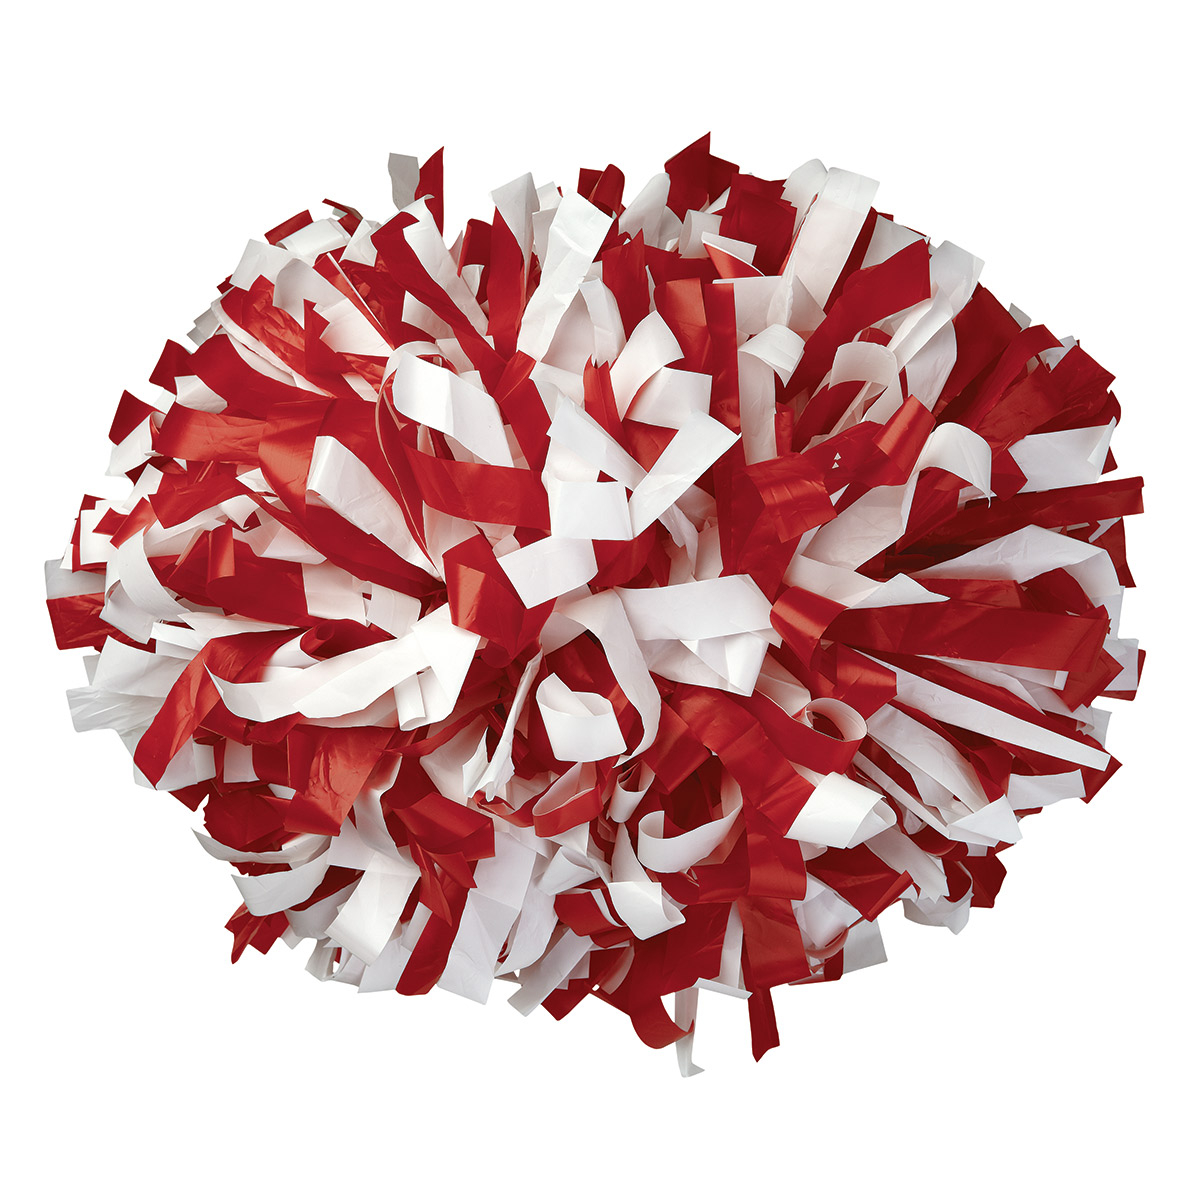 Small Red Cheerleader Pom Pom – 2pk – 80g